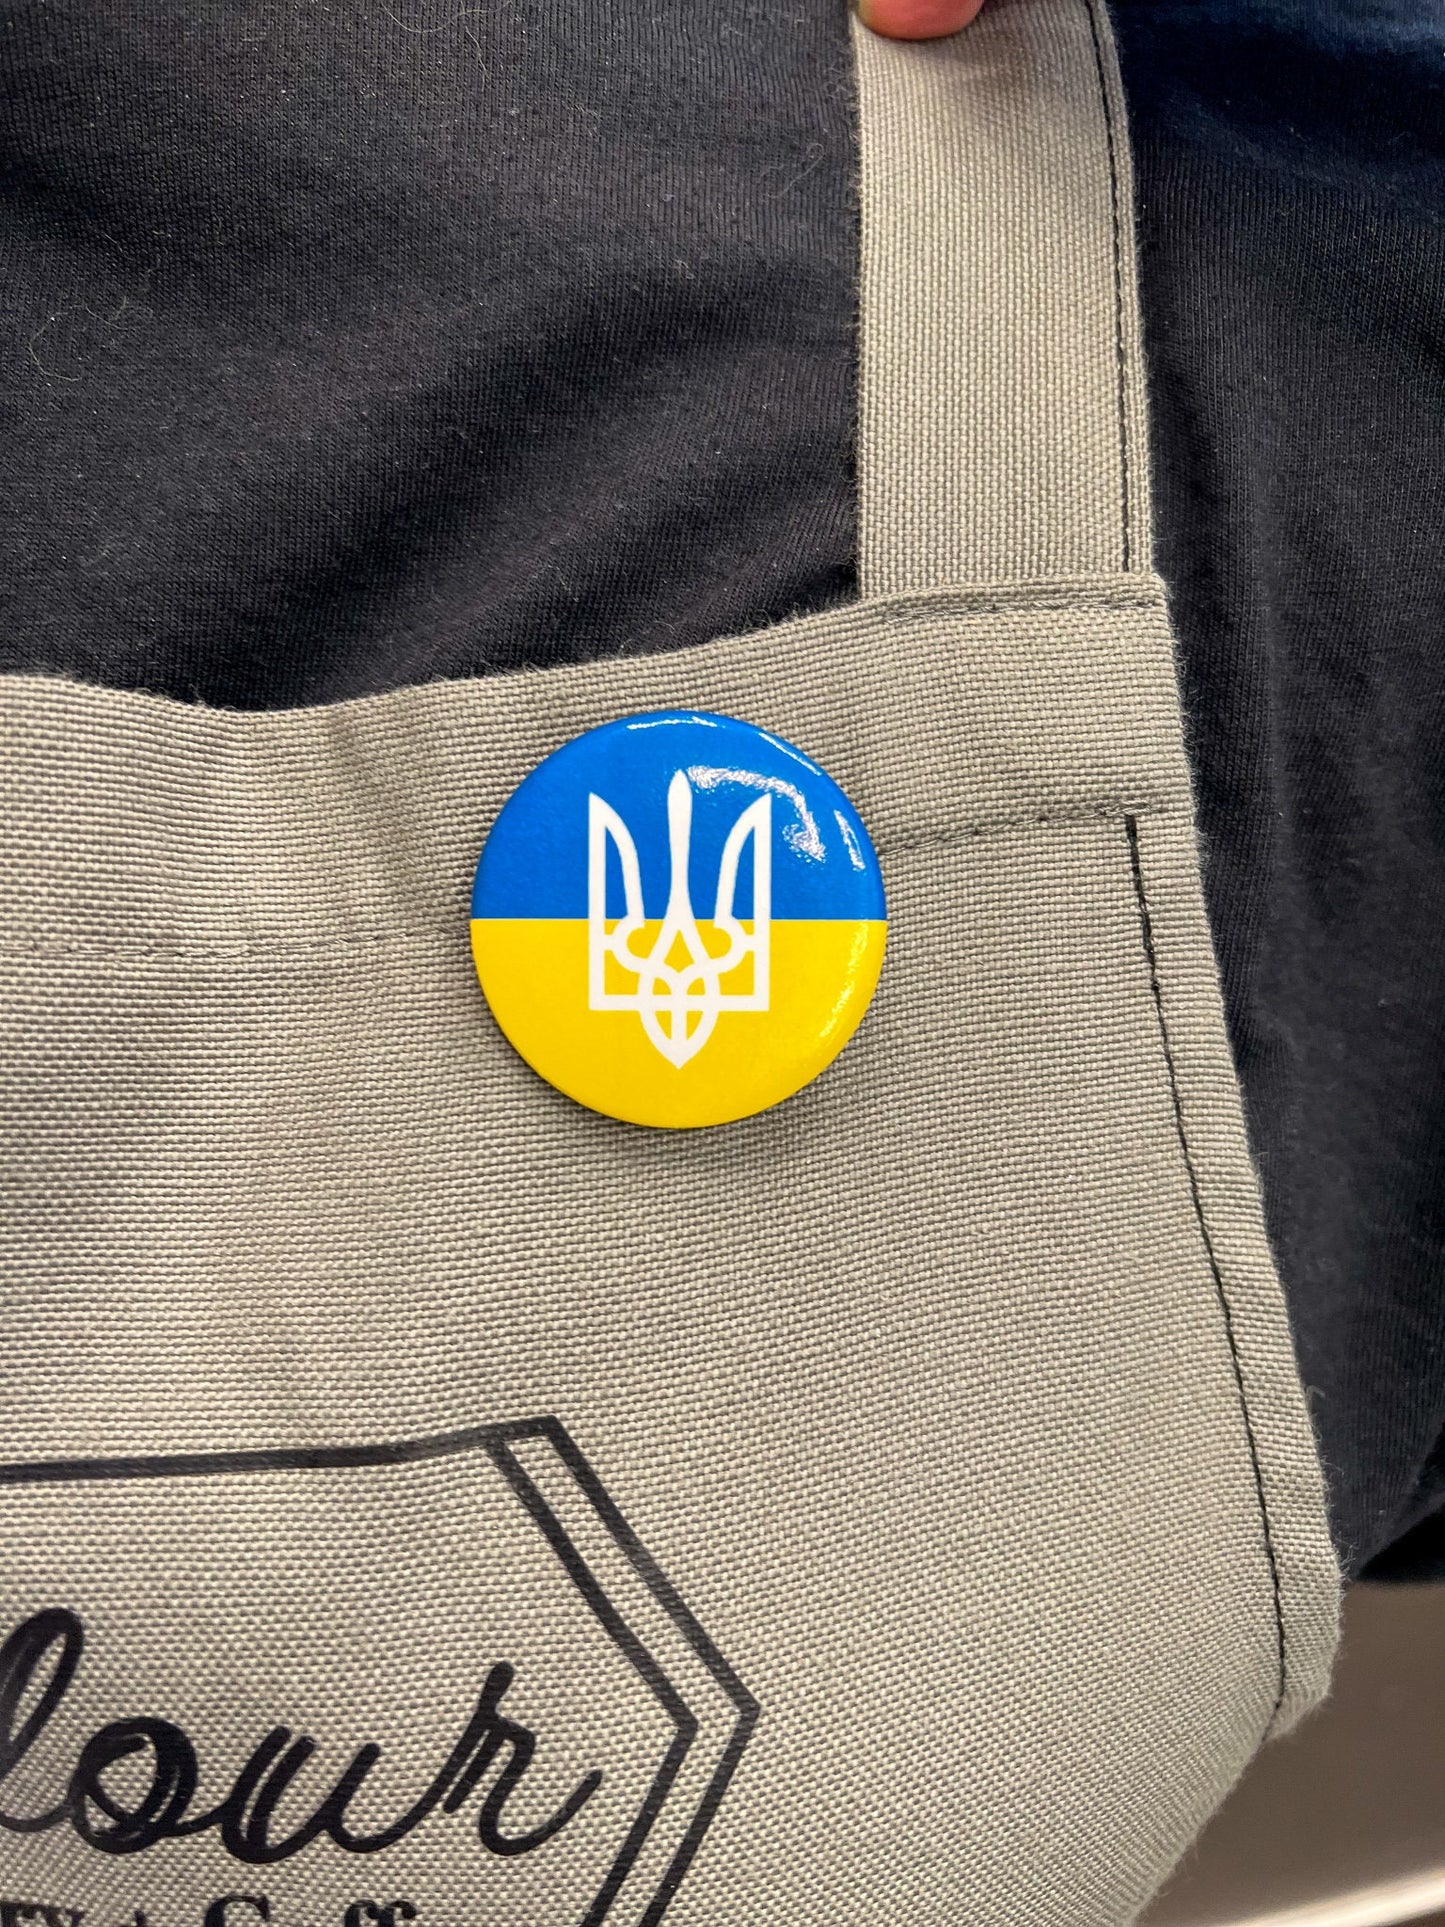 Ukraine Flag Round Button Pin